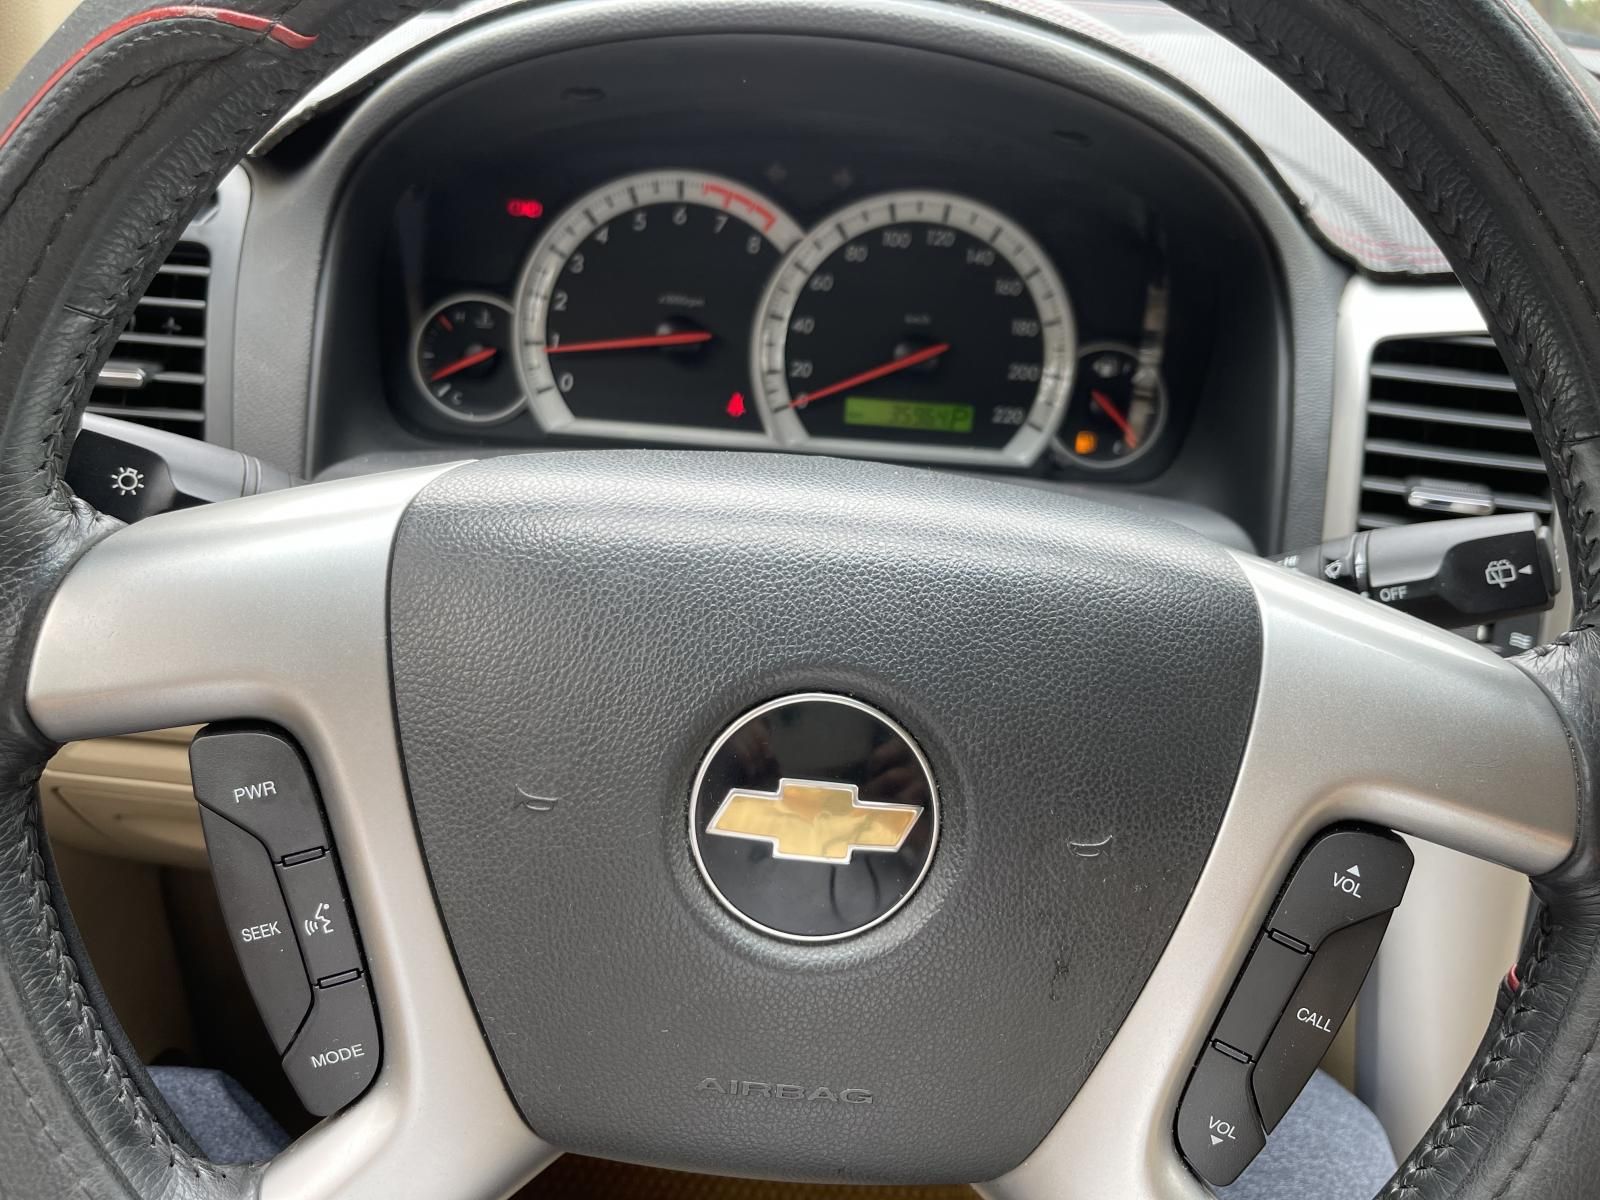 Chevrolet Captiva 2010 - Máy xăng 2.4, số tự động, odo chuẩn 36.000 km